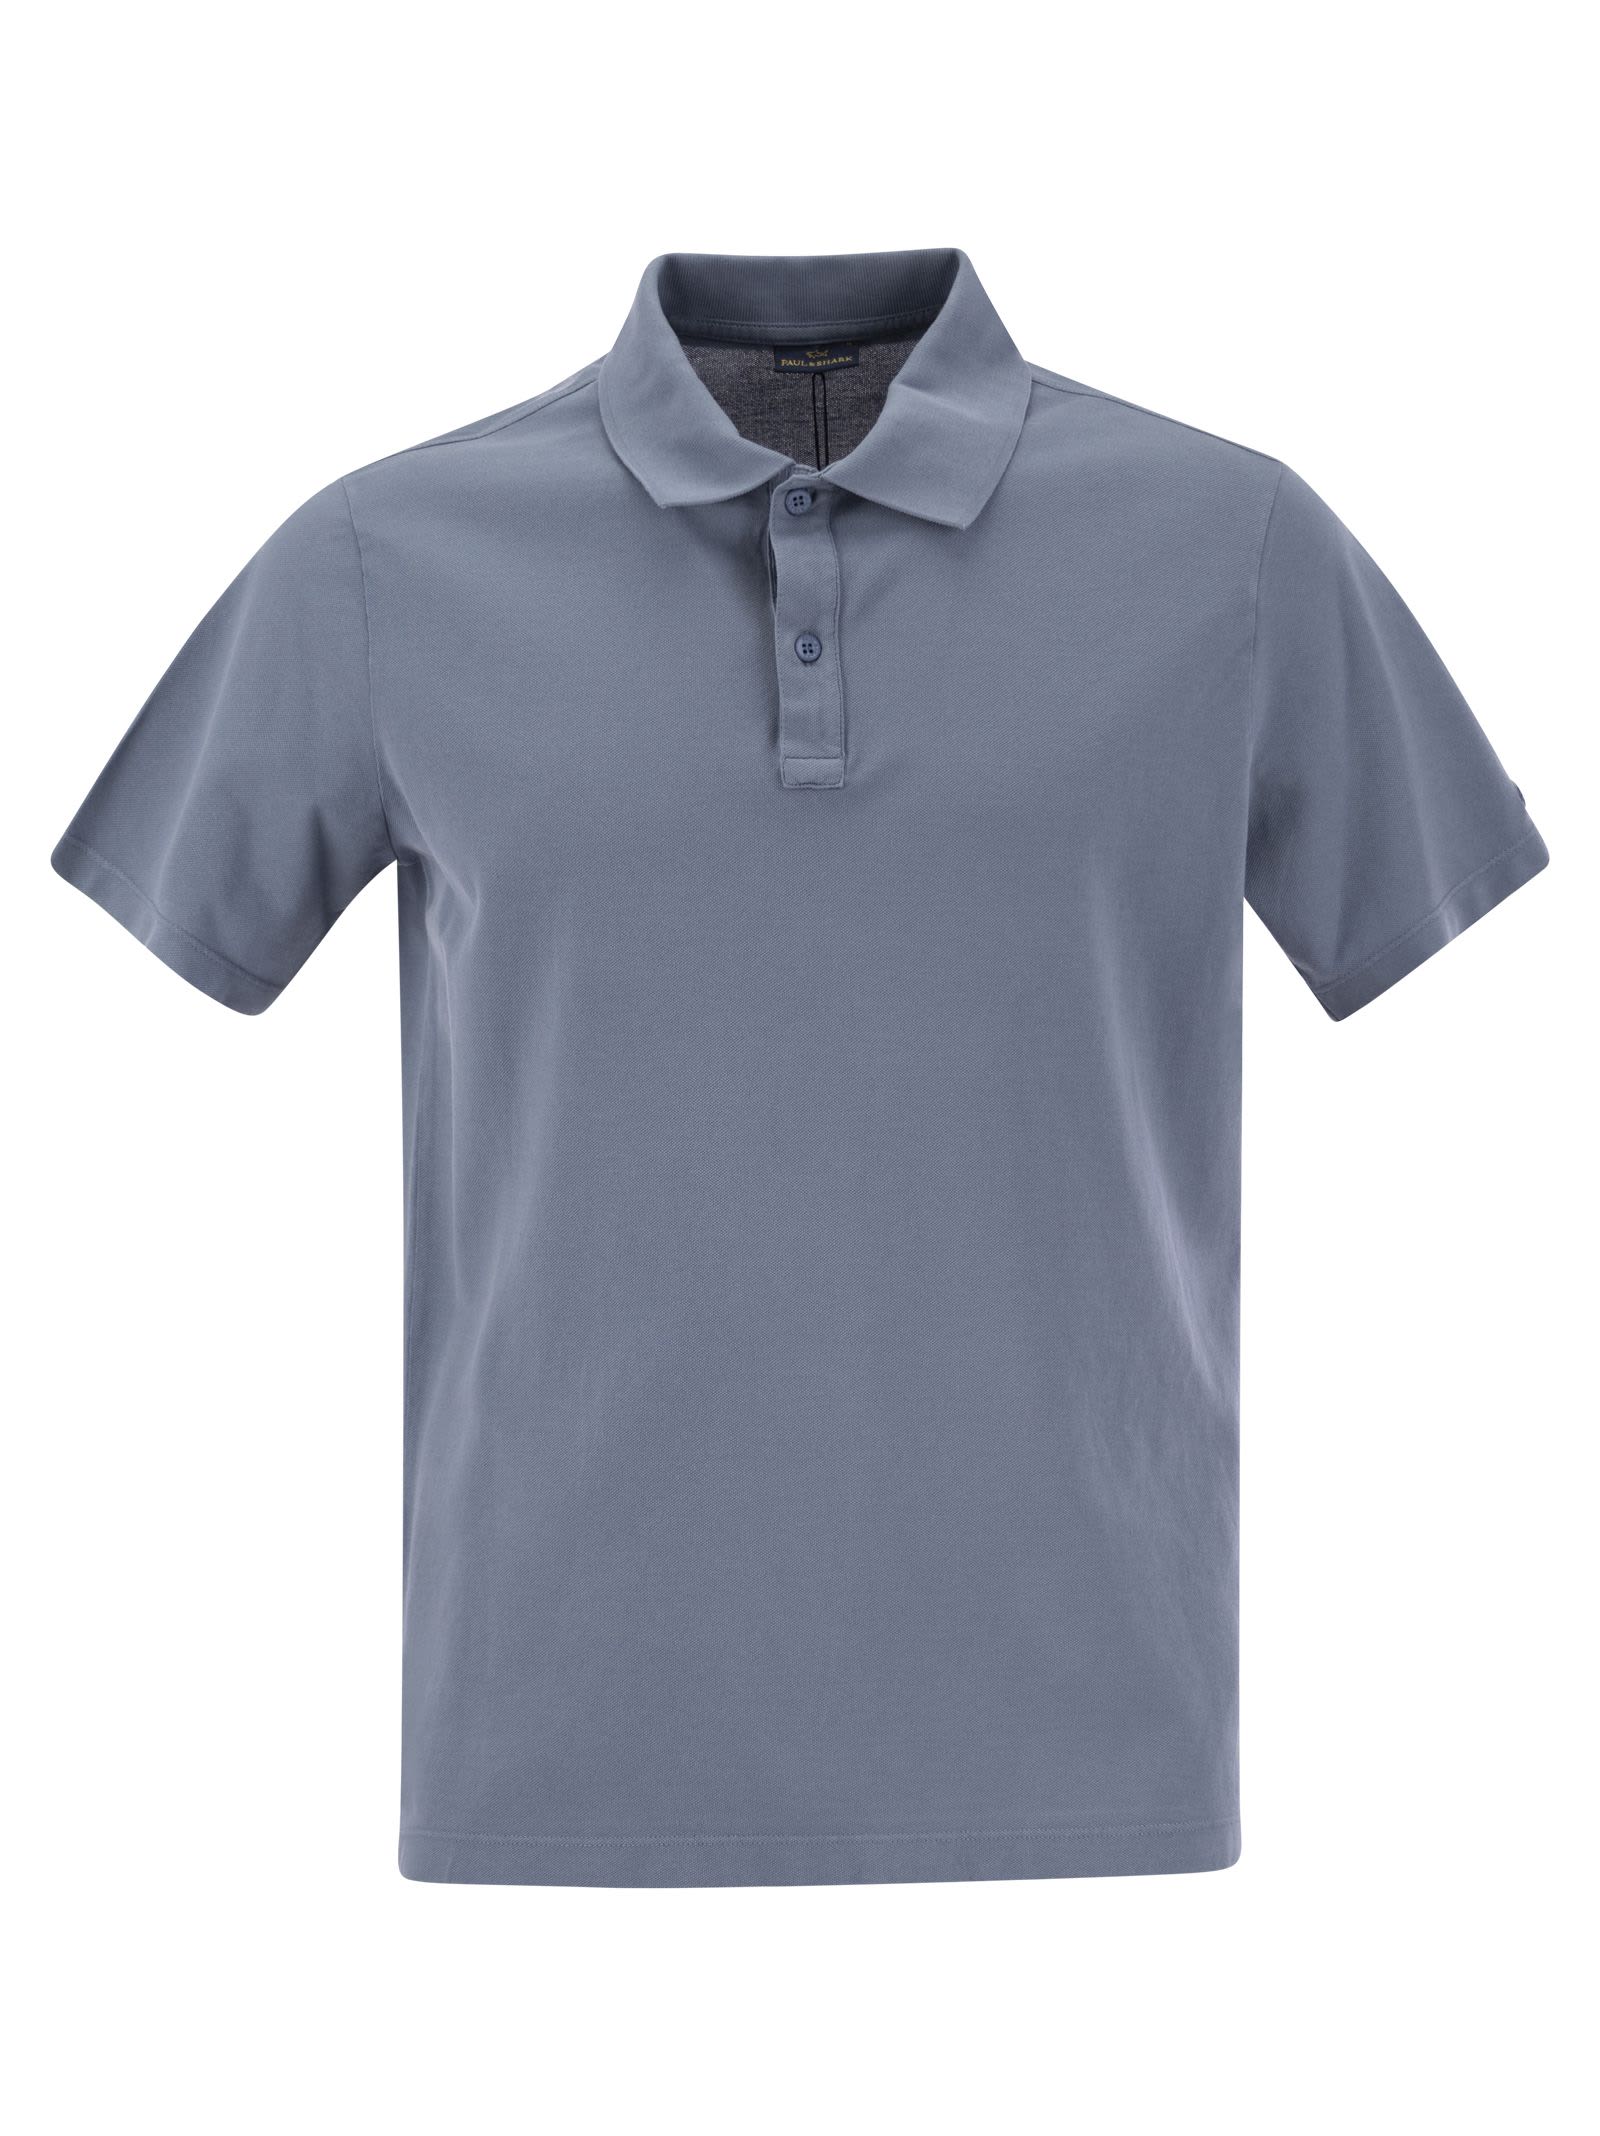 Garment-dyed Pique Cotton Polo Shirt